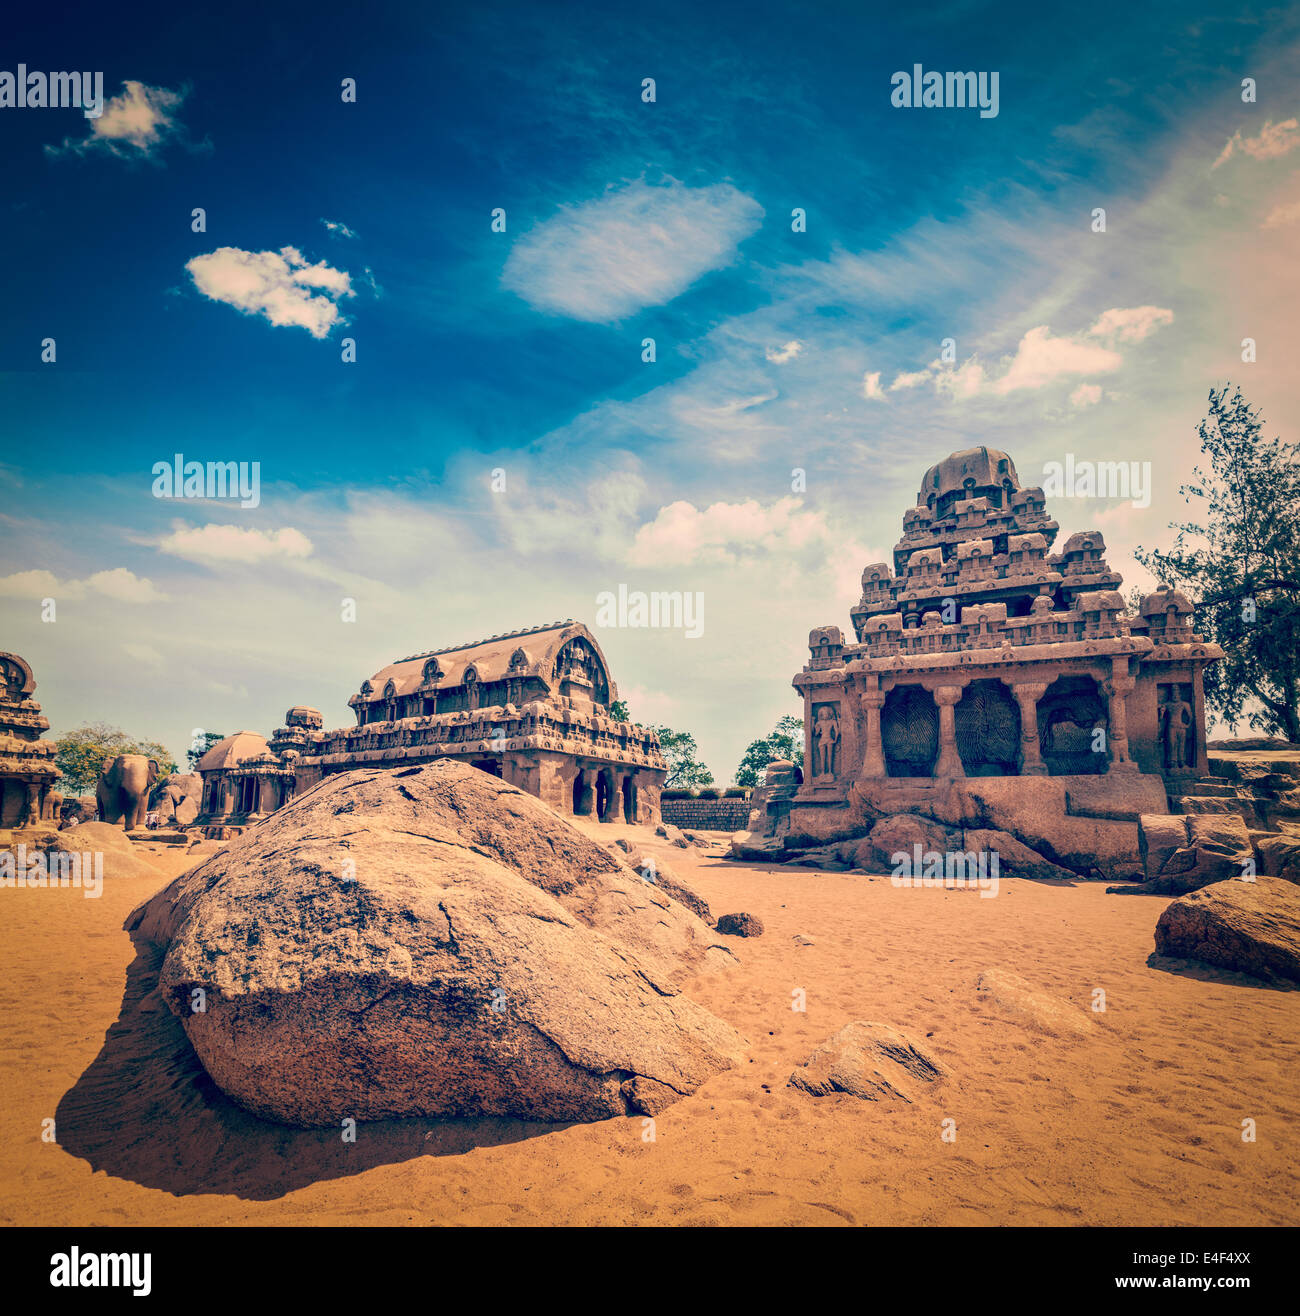 Vintage retrò hipster stile immagine di viaggio di cinque Rathas - antico indù indiano monolitico rock-cut architettura. Mahabalipuram, Foto Stock